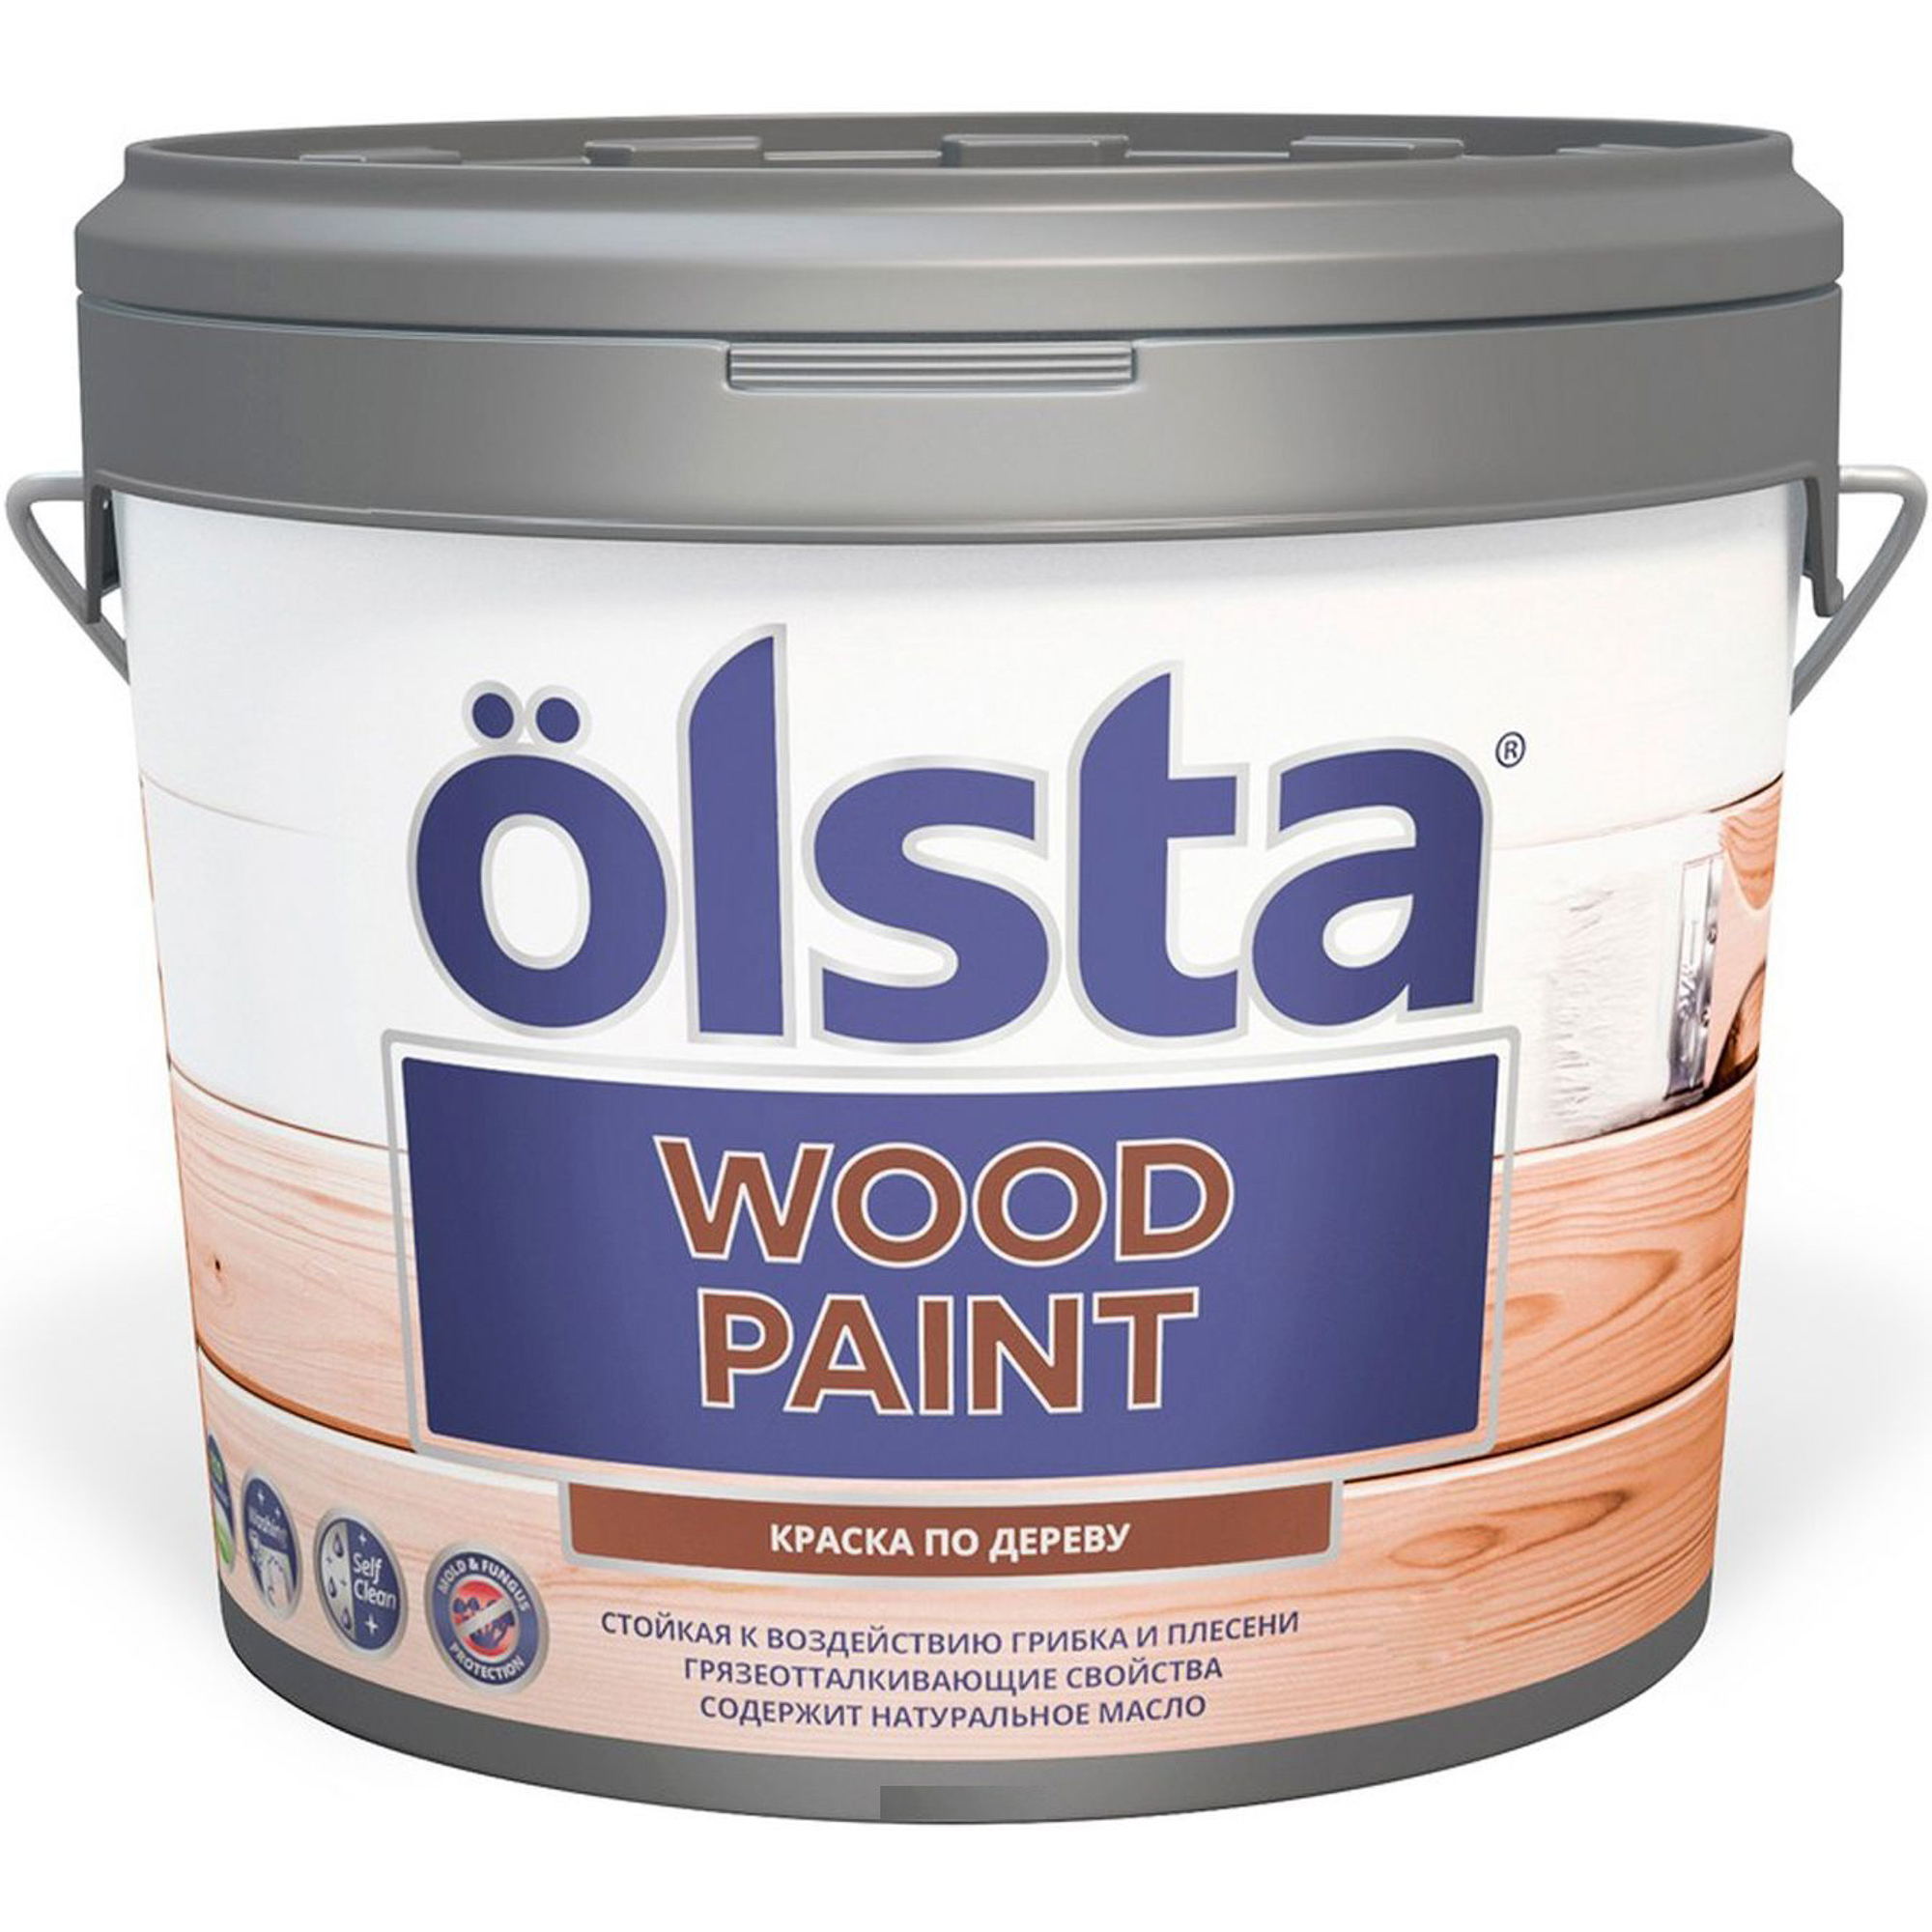 Краска Olsta wood paint для дерева a 2.7 л цена и фото